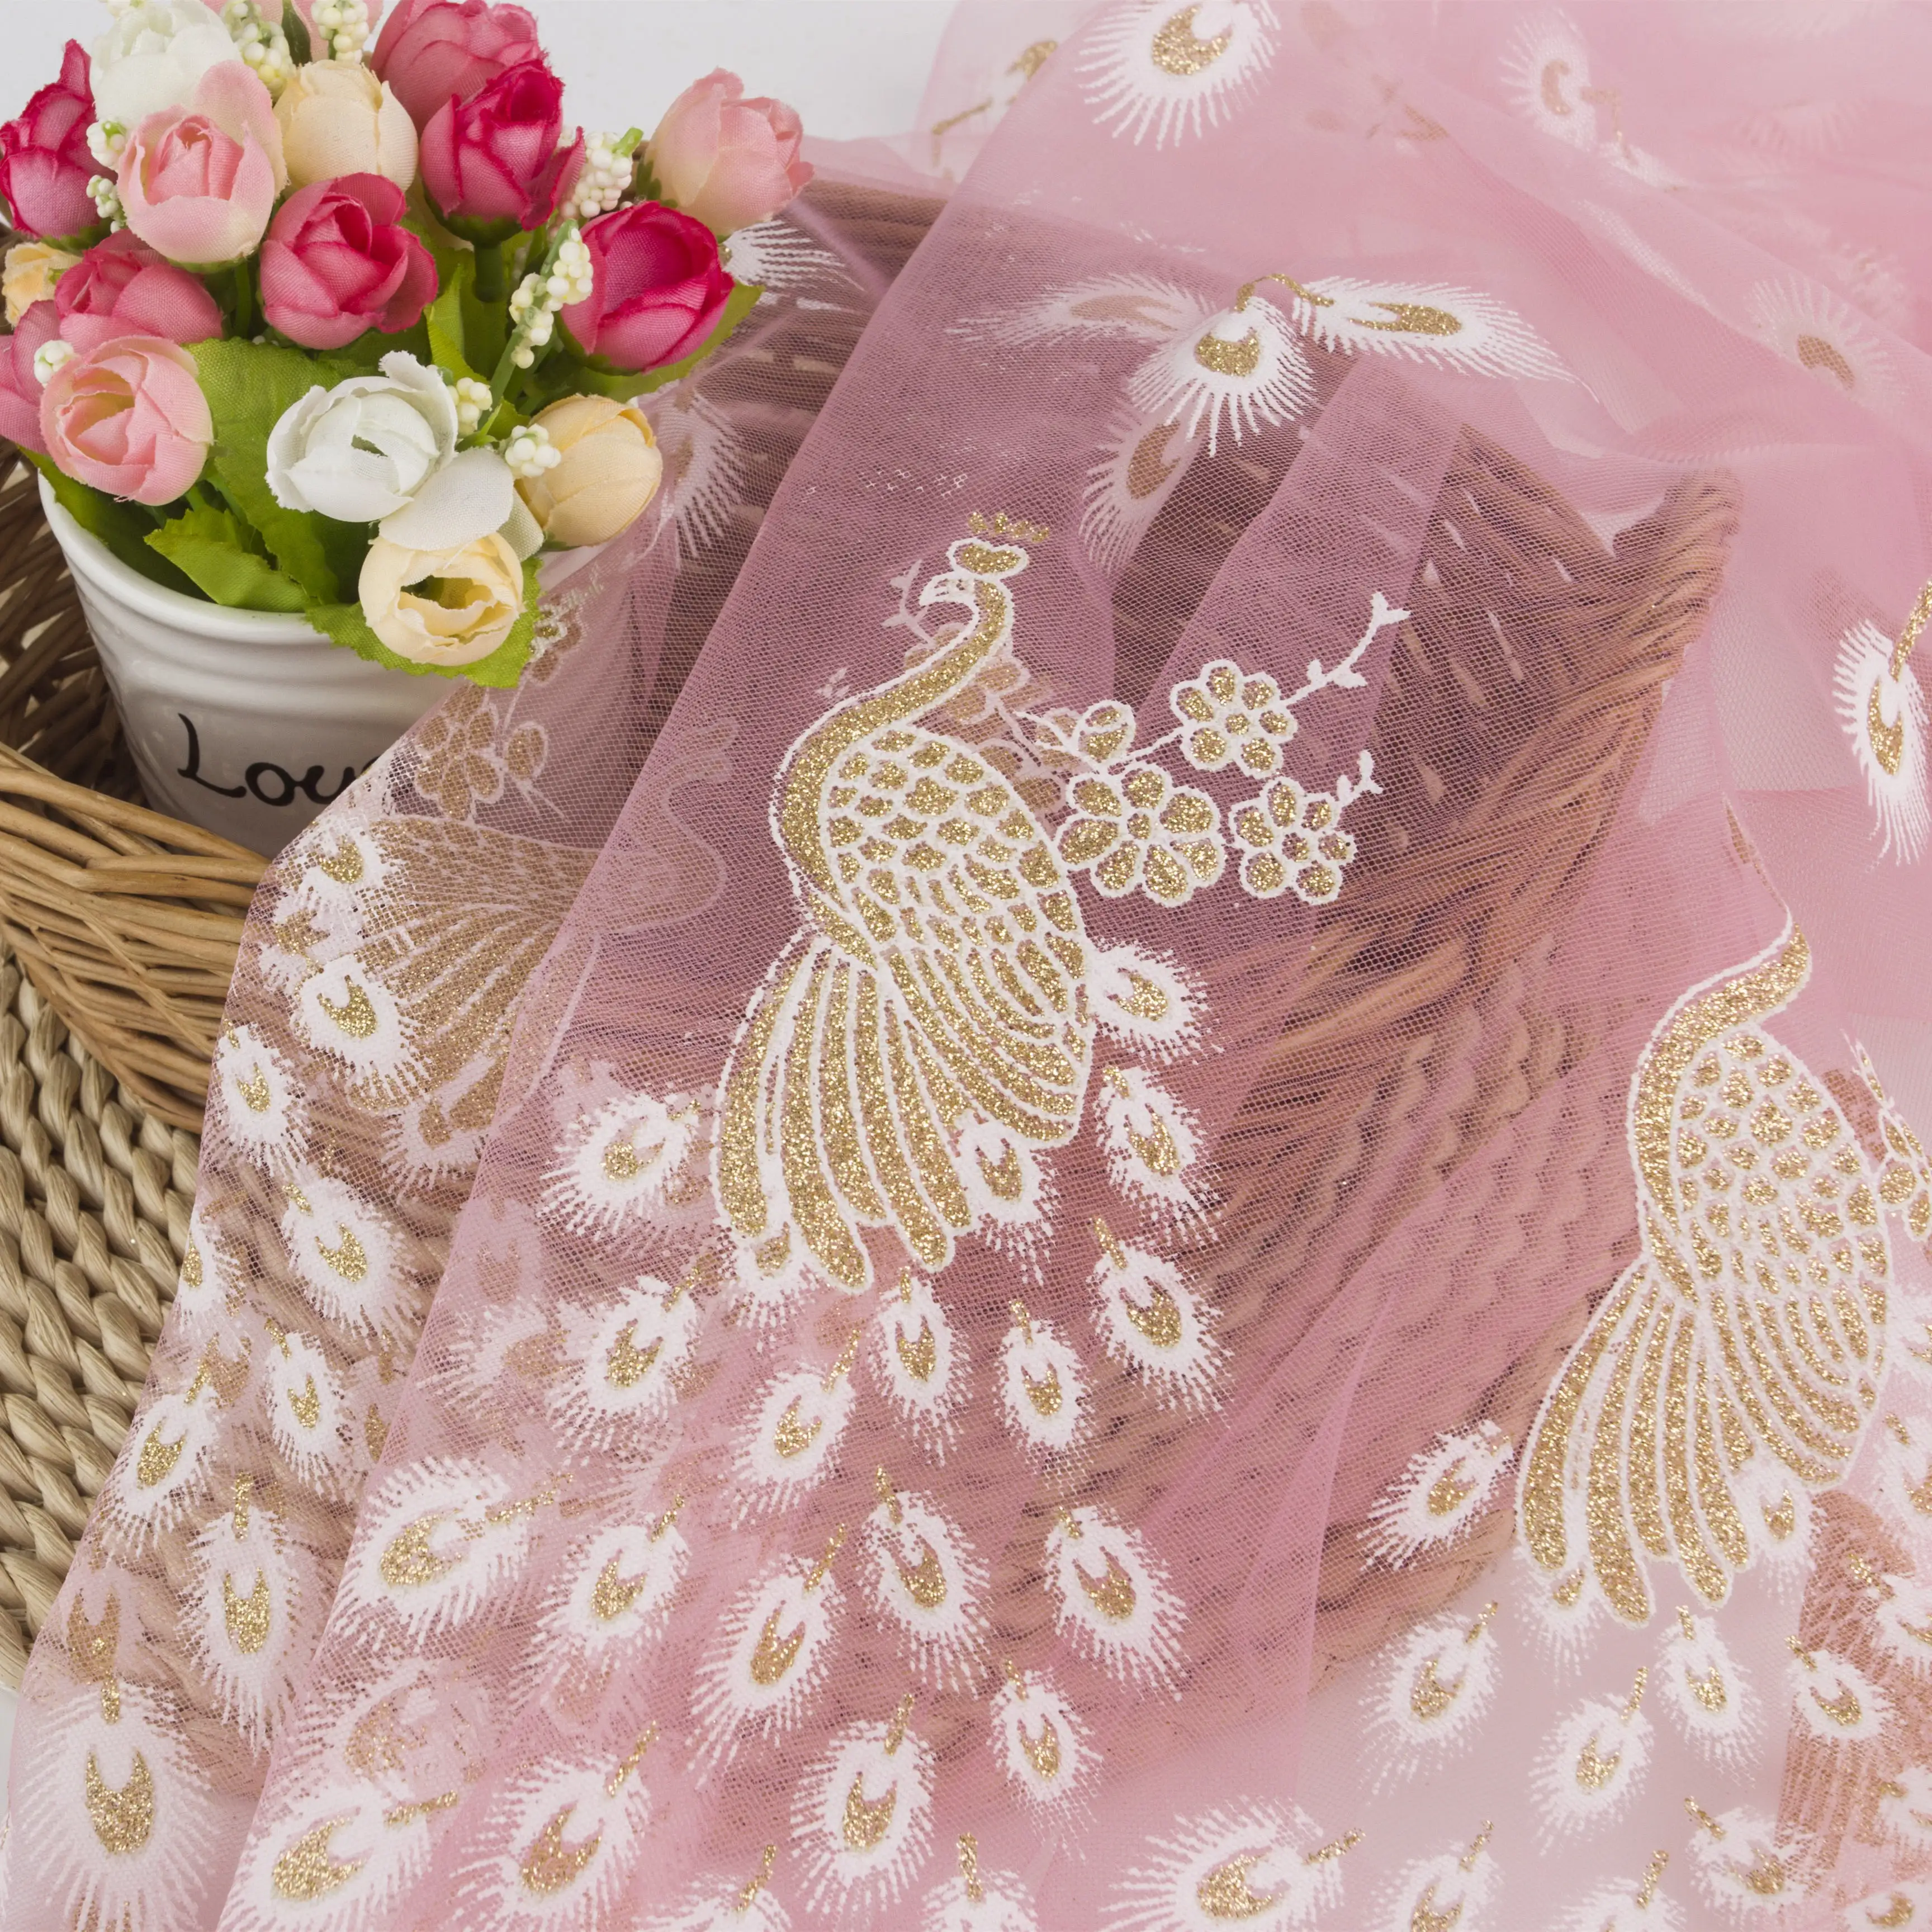 Tissu tulle rose clair, en maille or et paillettes, pour robe de reine, nouveau design